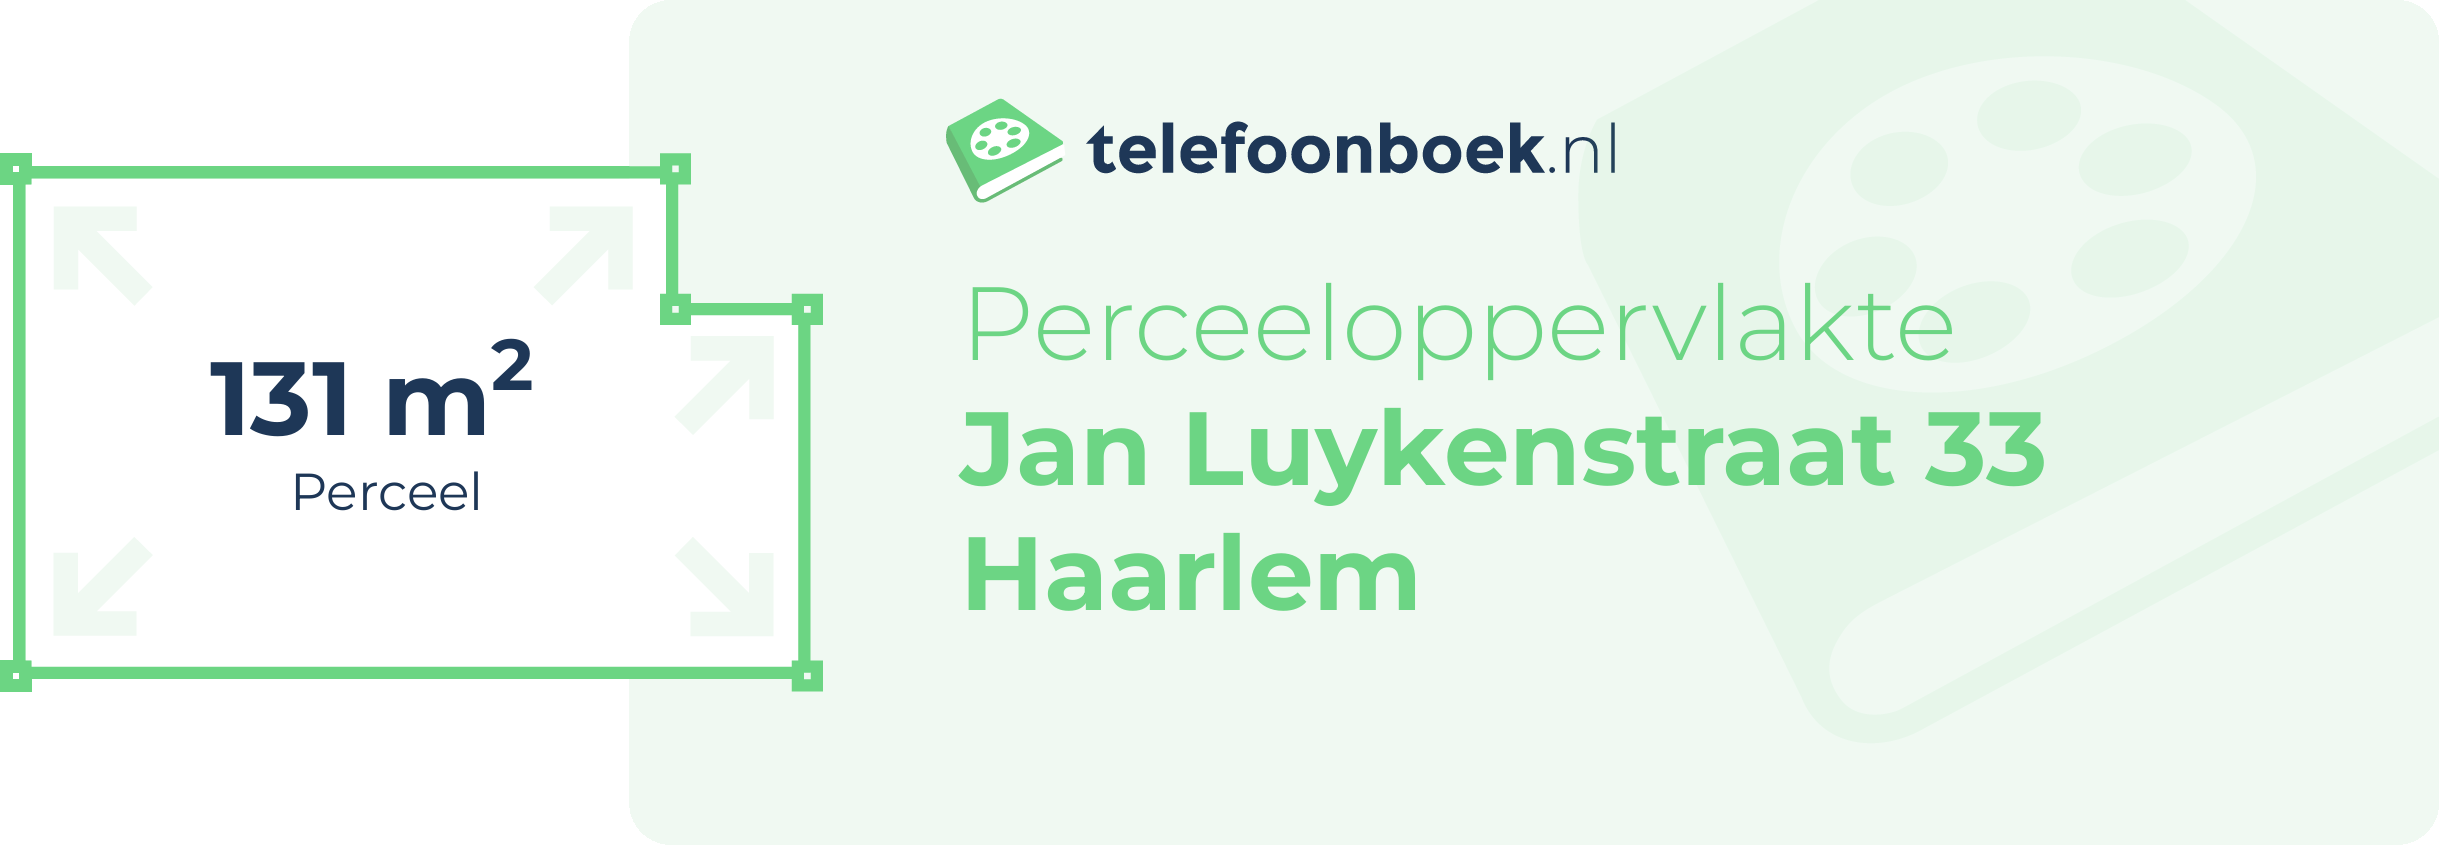 Perceeloppervlakte Jan Luykenstraat 33 Haarlem